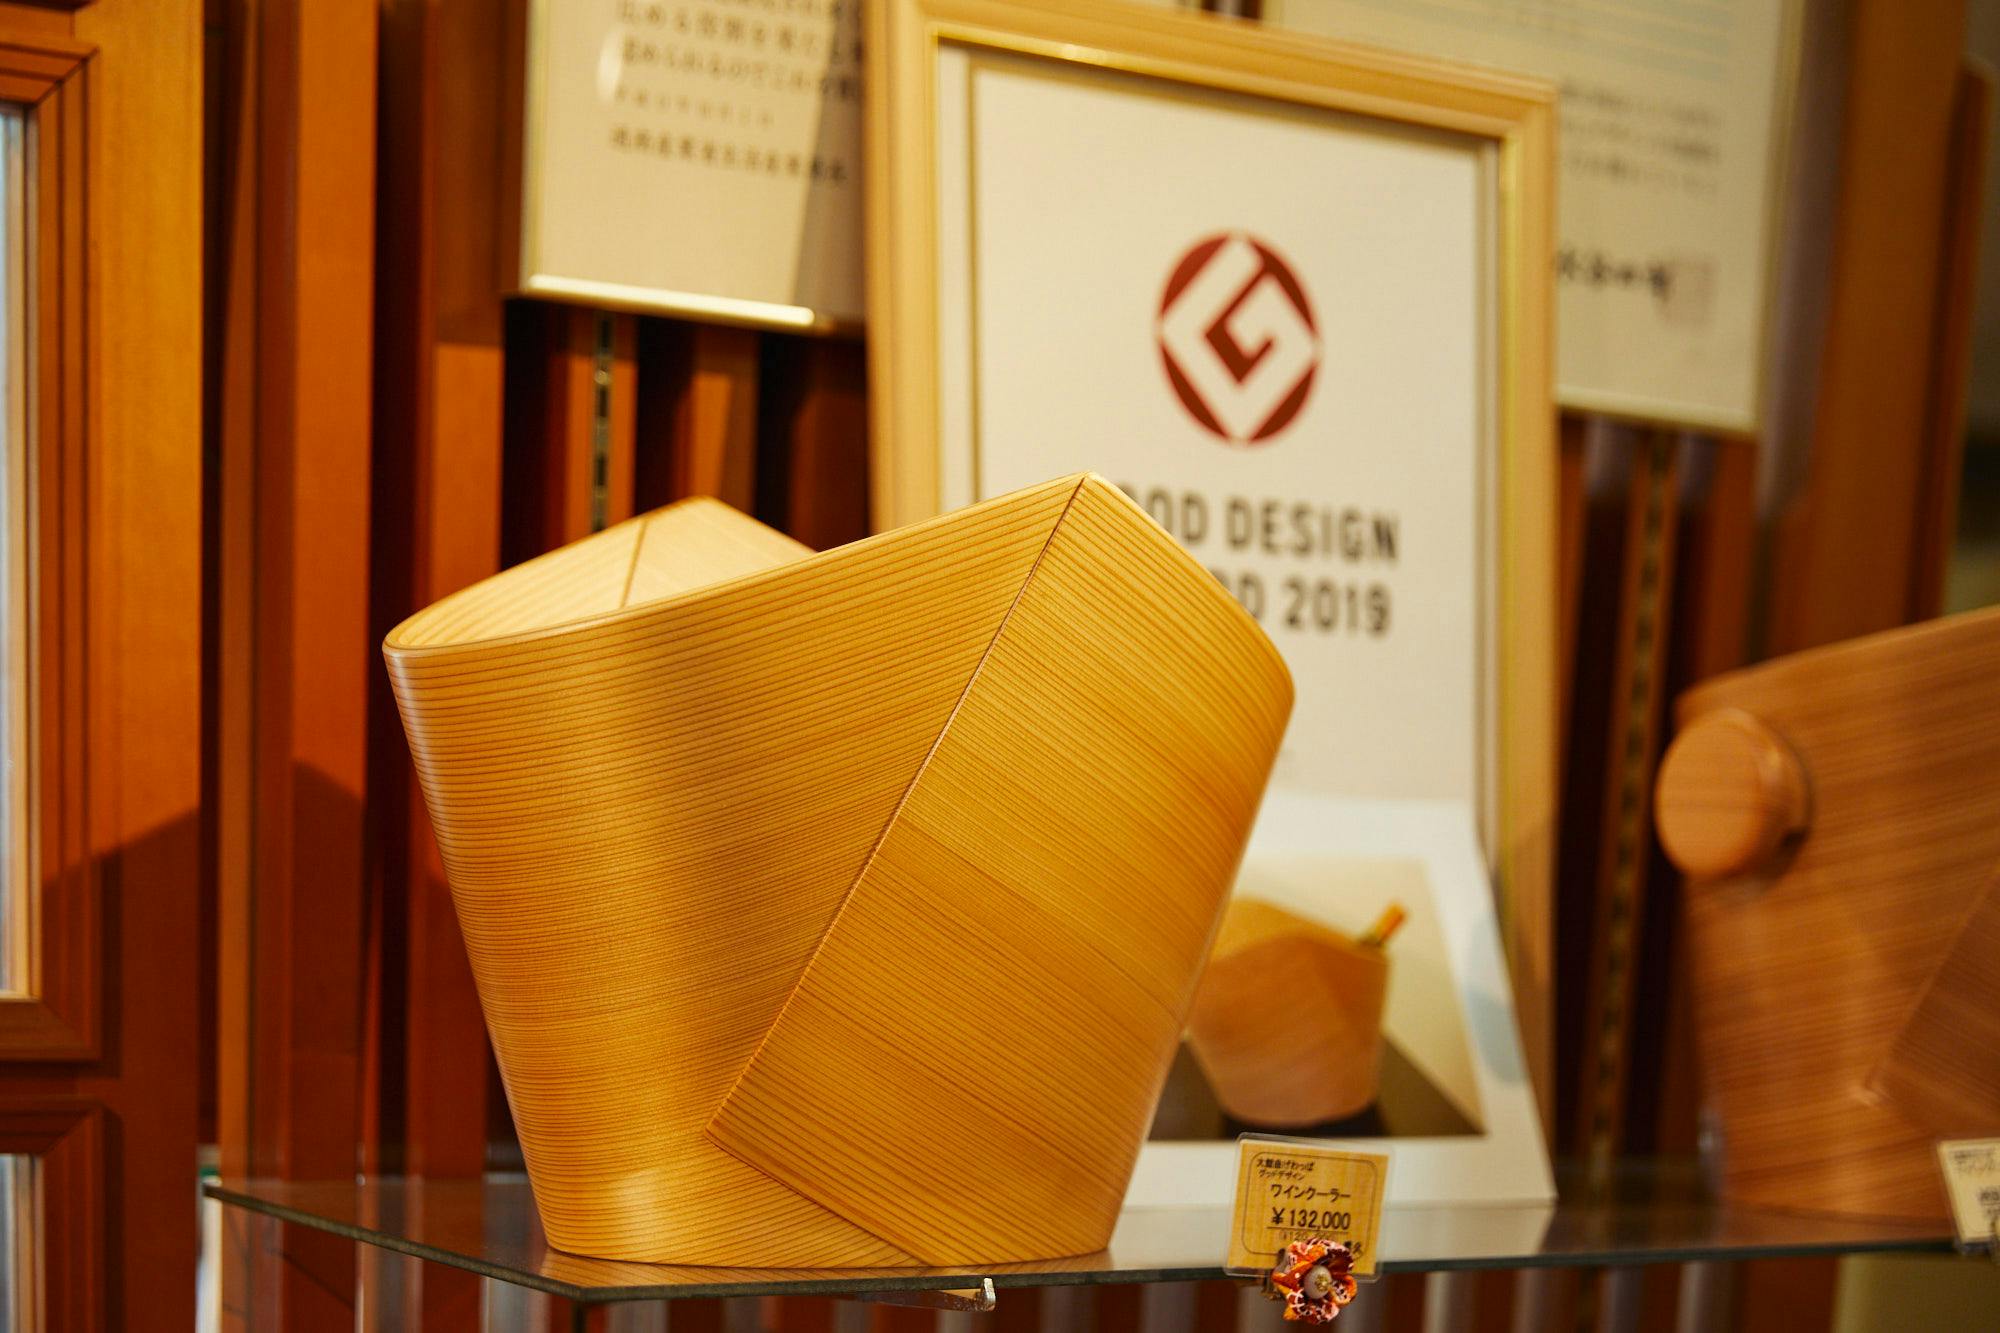 2019年にグッドデザイン賞を受賞したワインクーラー